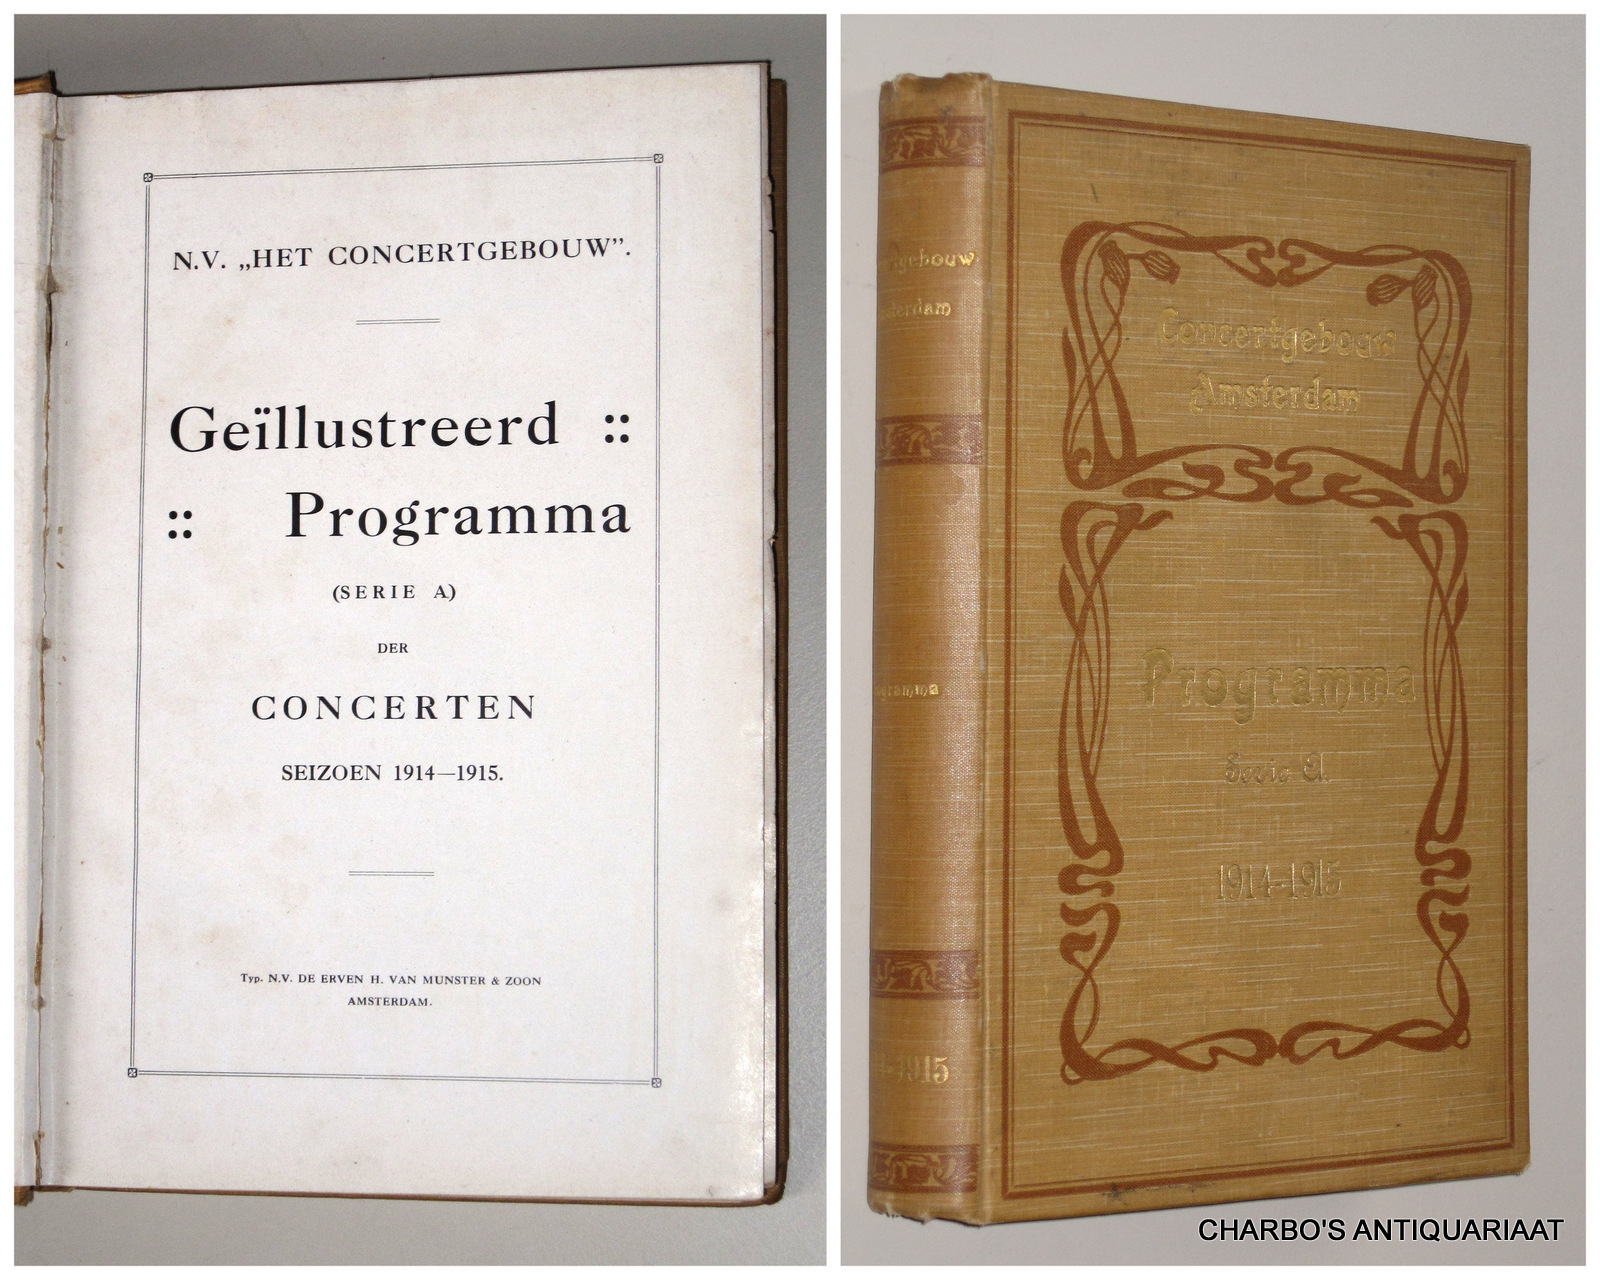 CONCERTGEBOUW, N.V. HET, -  Gellustreerd programma (serie A) der concerten seizoen 1914-1915.